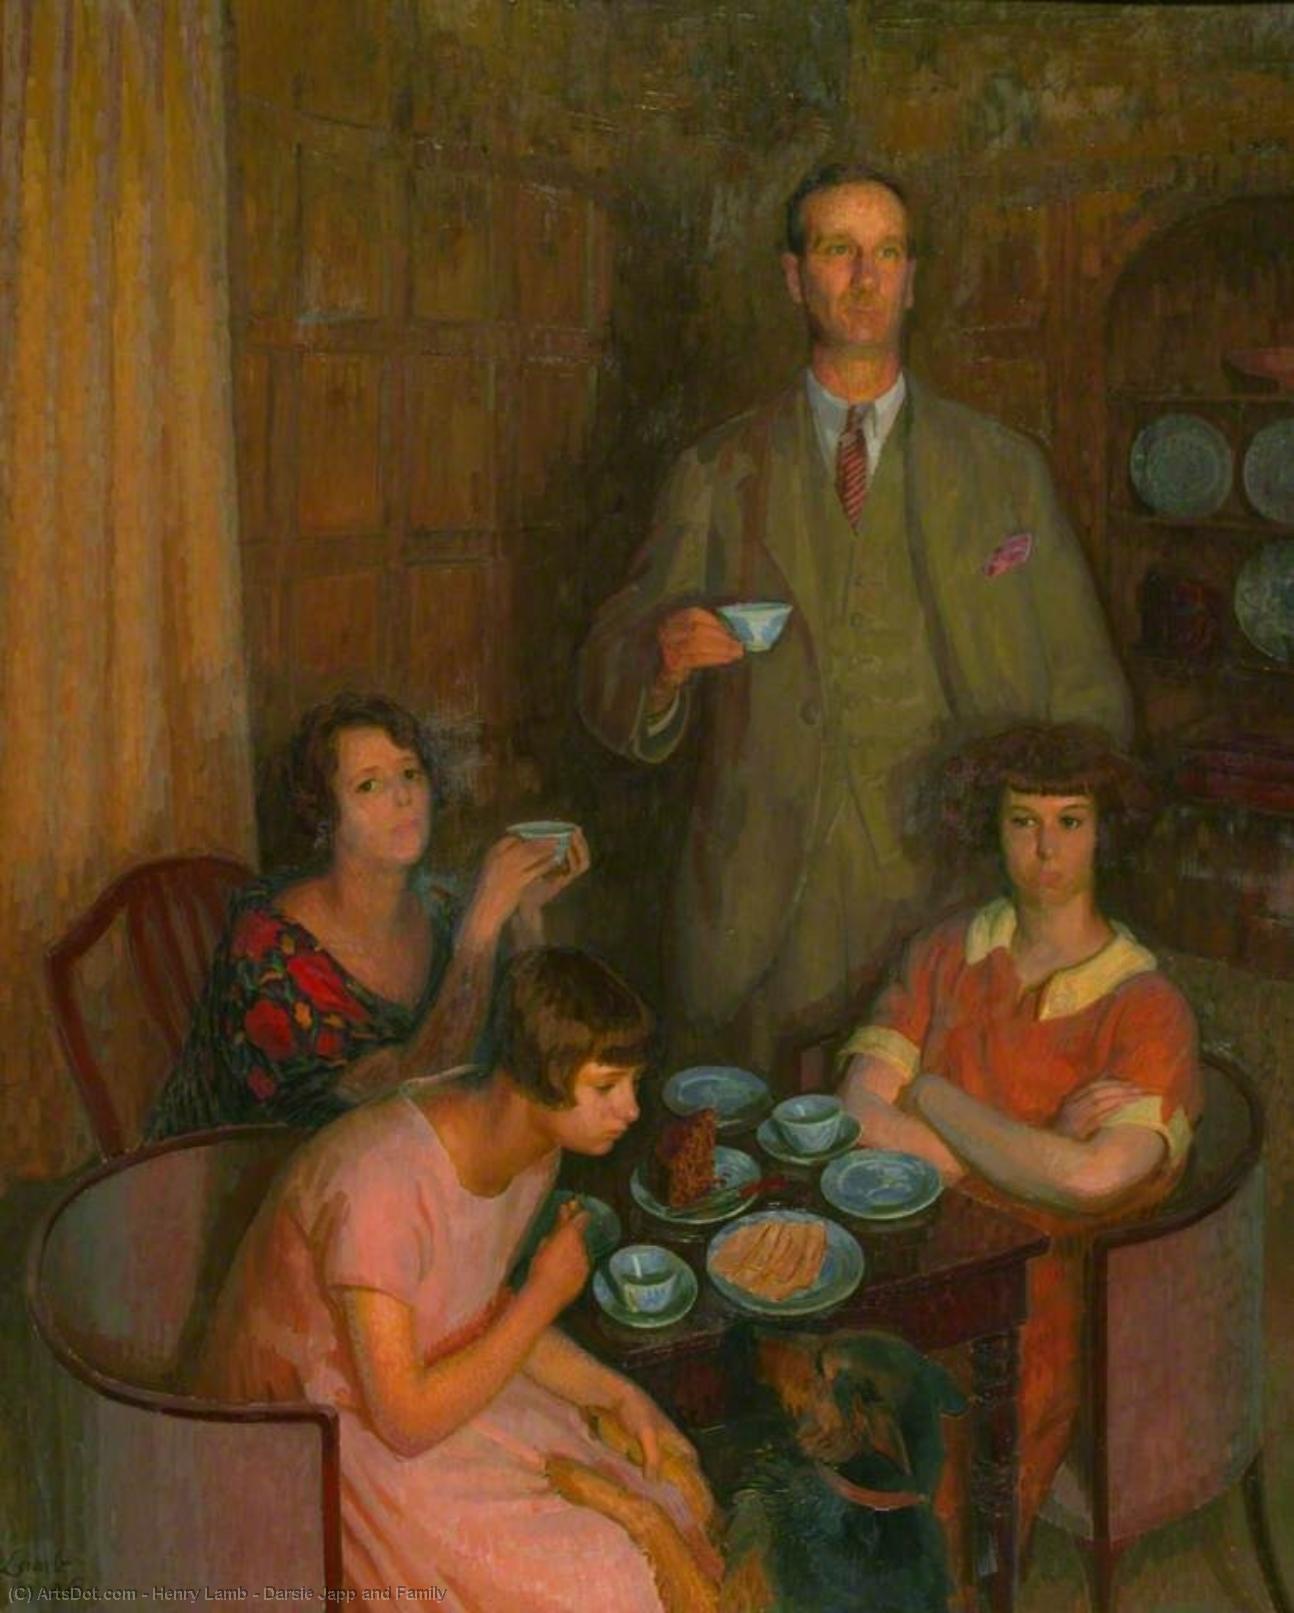 WikiOO.org - אנציקלופדיה לאמנויות יפות - ציור, יצירות אמנות Henry Lamb - Darsie Japp and Family